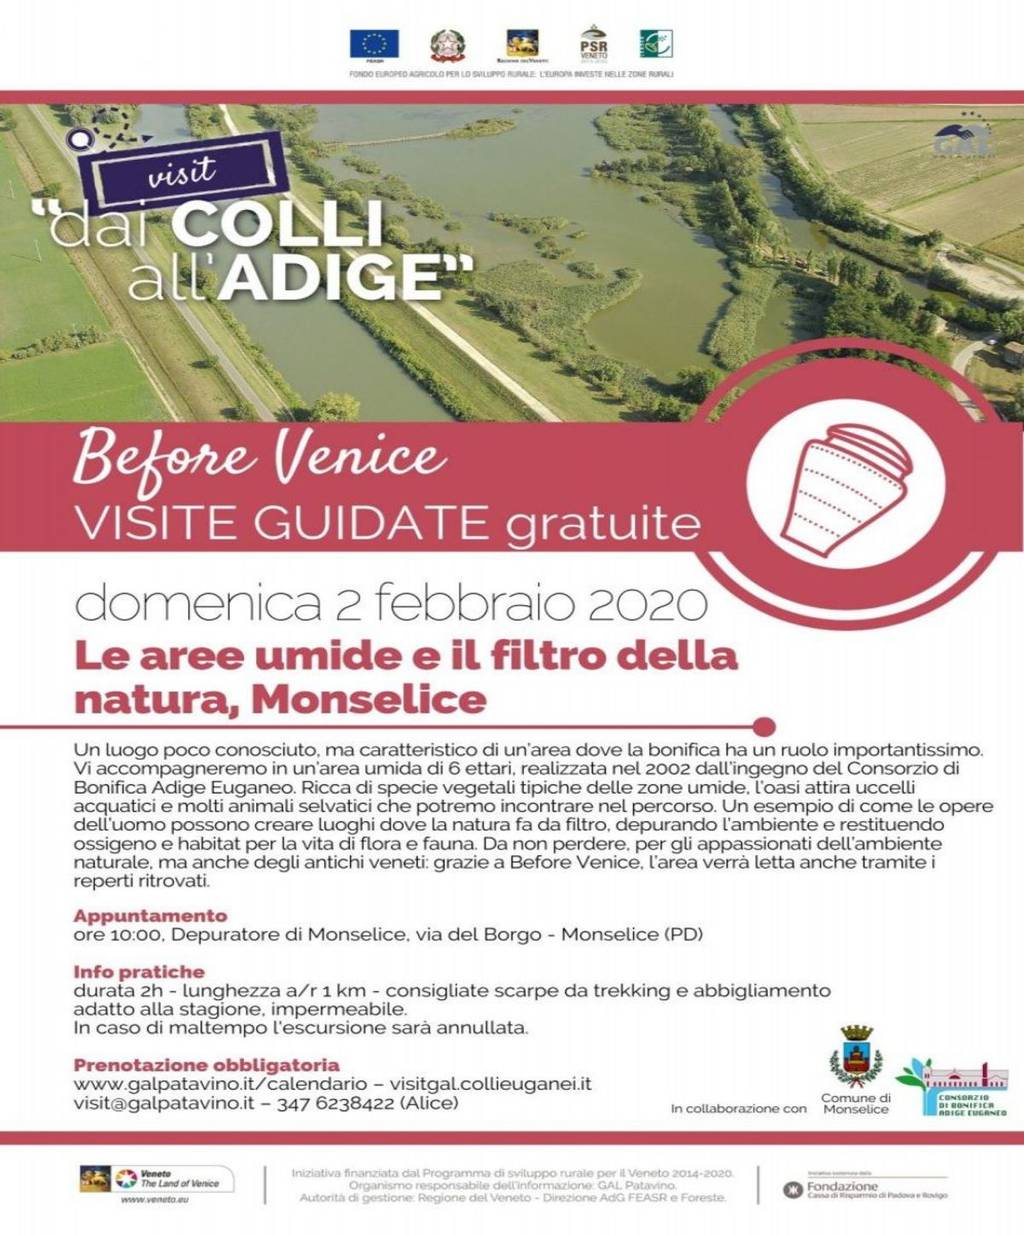 Before Venice: le aree umide e il filtro della natura a Monselice